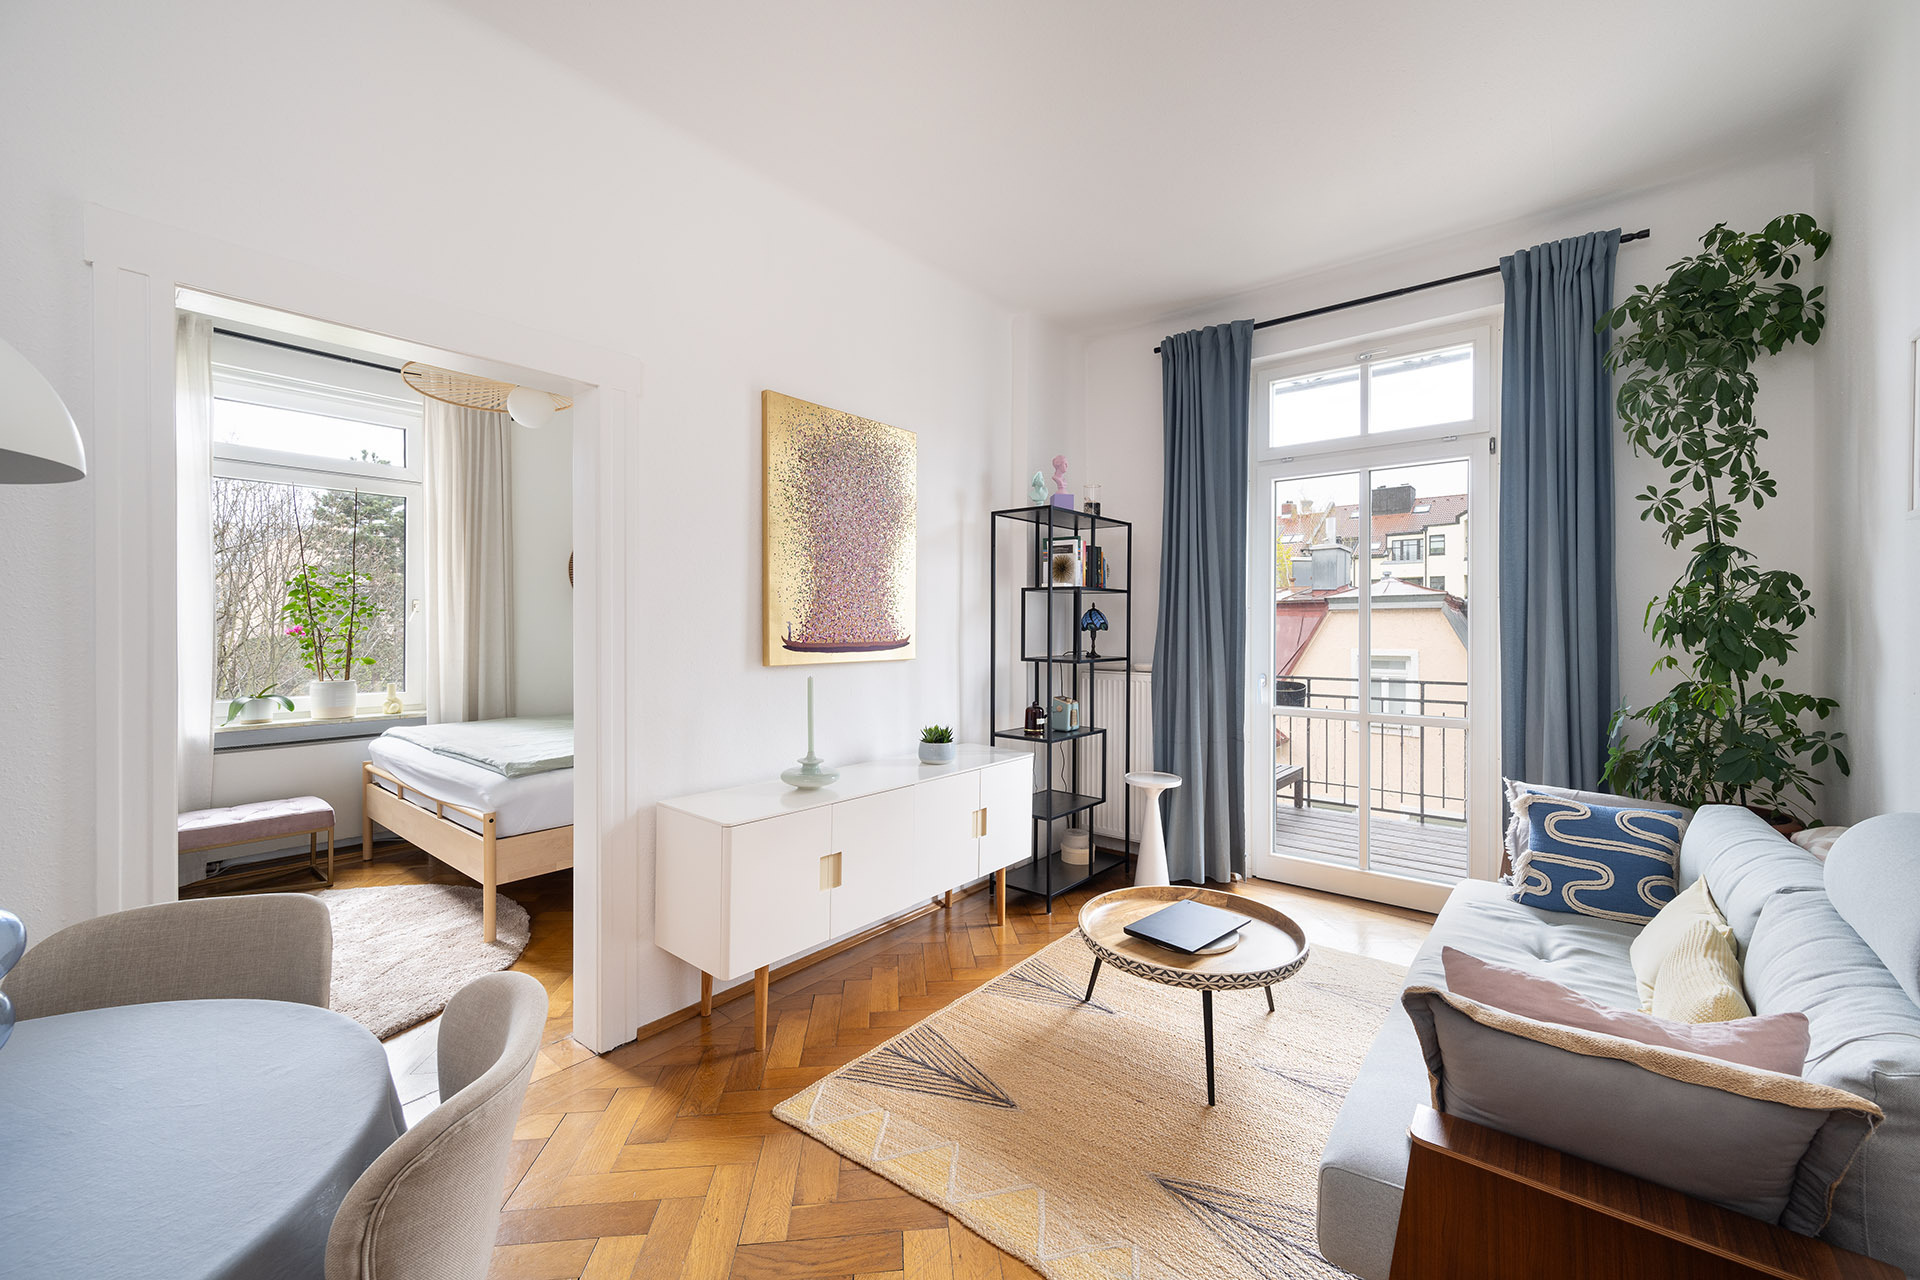 Bezaubernde, denkmalsgeschützte 2-Zimmer-Wohnung in München-Schwabing - Wohnzimmer